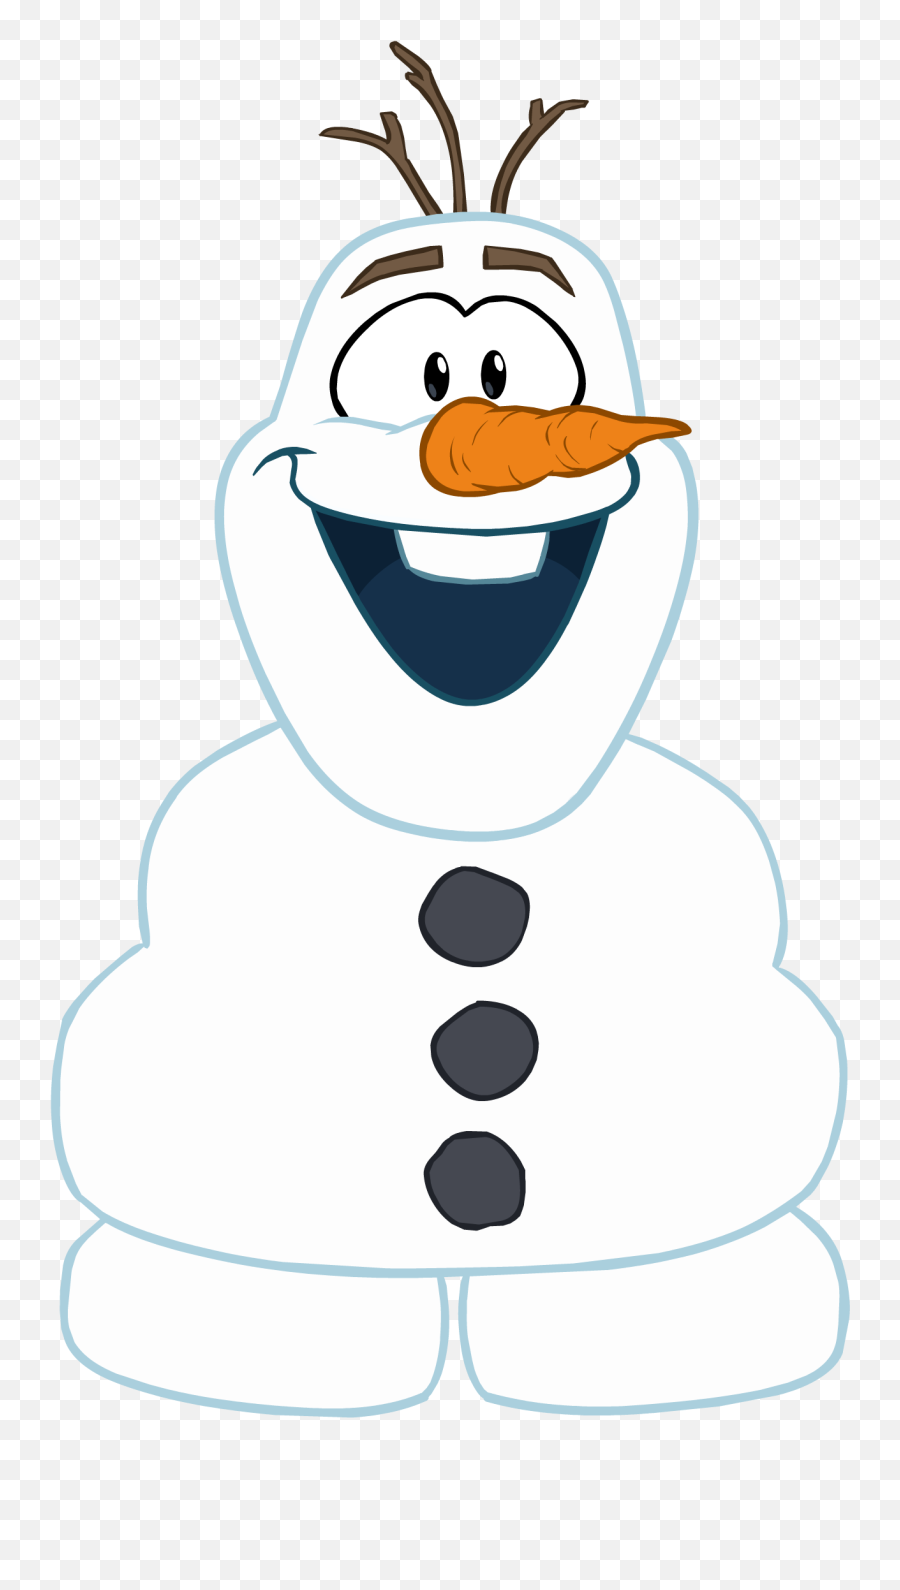 Olafs Costume - Olaf Club Penguin Emoji,Disney Emoji Olaf